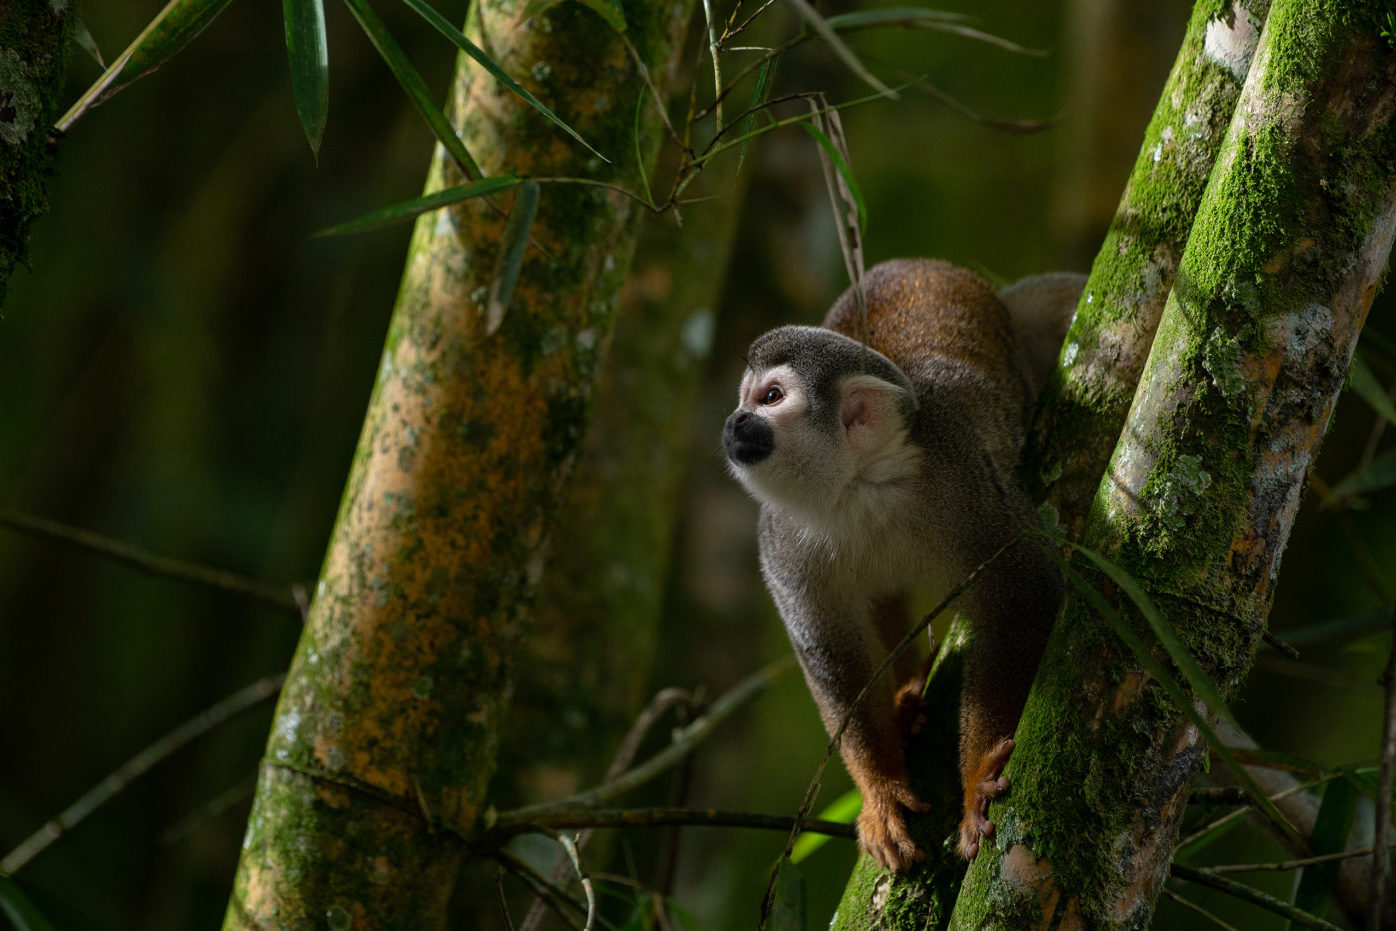 Equador avalia se vai continuar ou não exploração de petróleo no Parque Yasuní, uma das maiores biodiversidades da Amazônia. Na imagem: Macaco-de-cheiro sobre galho de bambu na reserva da biosfera do Yasuní, no Equador, um dos lugares mais biodiversos do planeta (Foto: Flor Ruiz/Diálogo Chino)